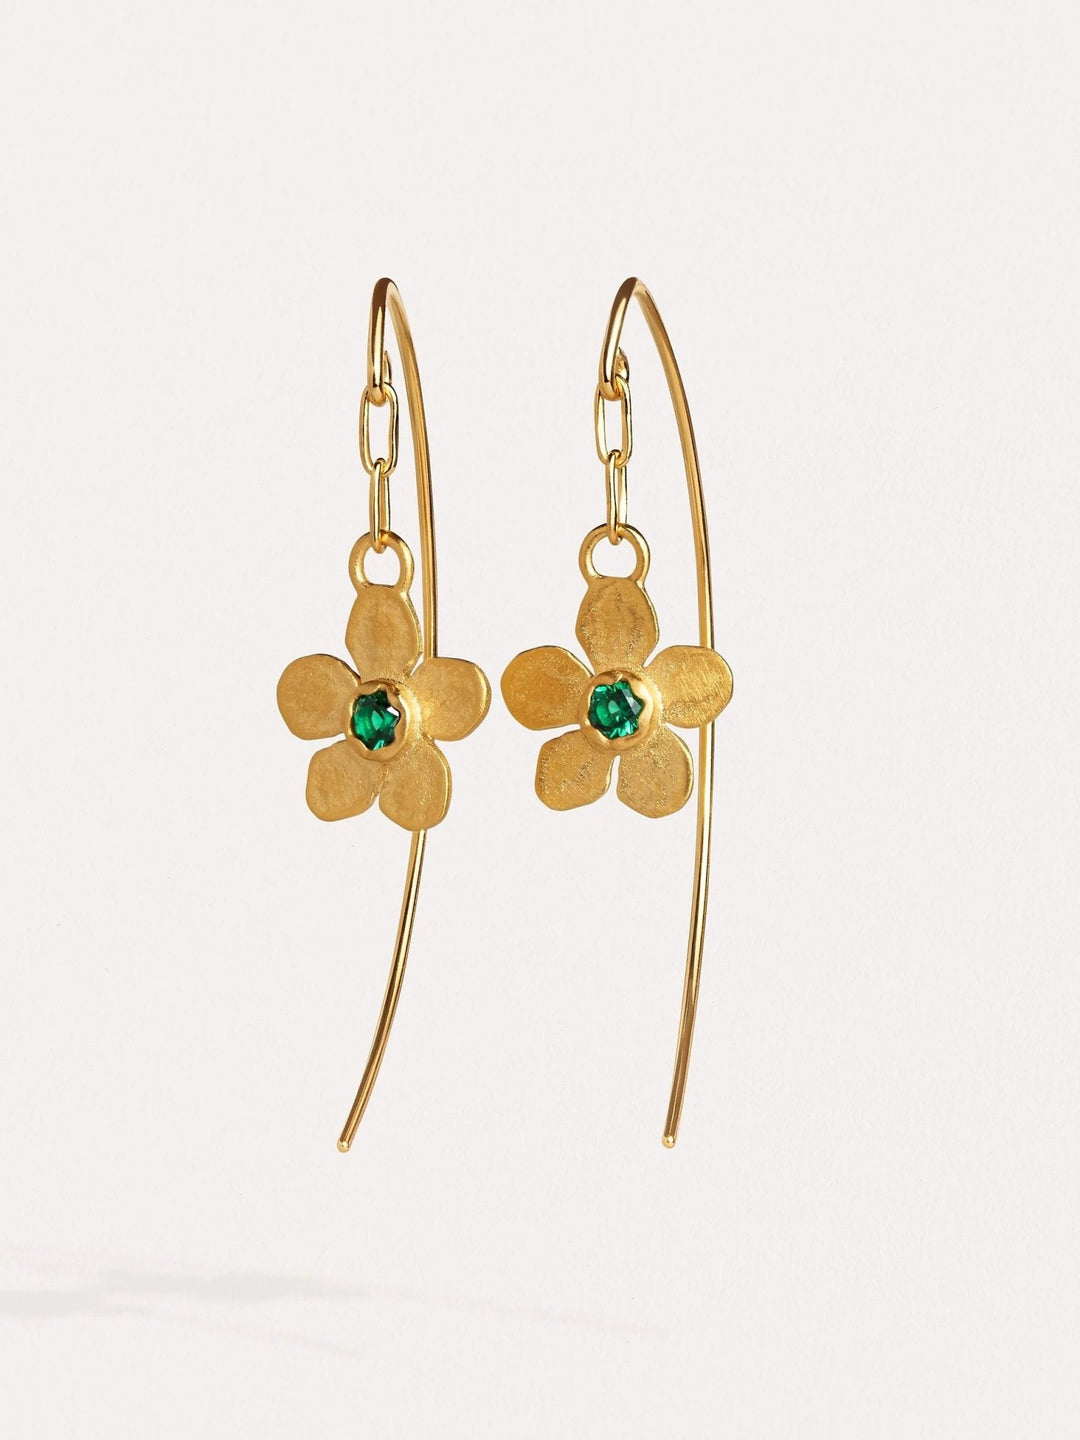 Tracey Dangle Earrings with Flower Charm - Emerald24k Gold Matteboho earringschandelier earringsLunai Jewelry